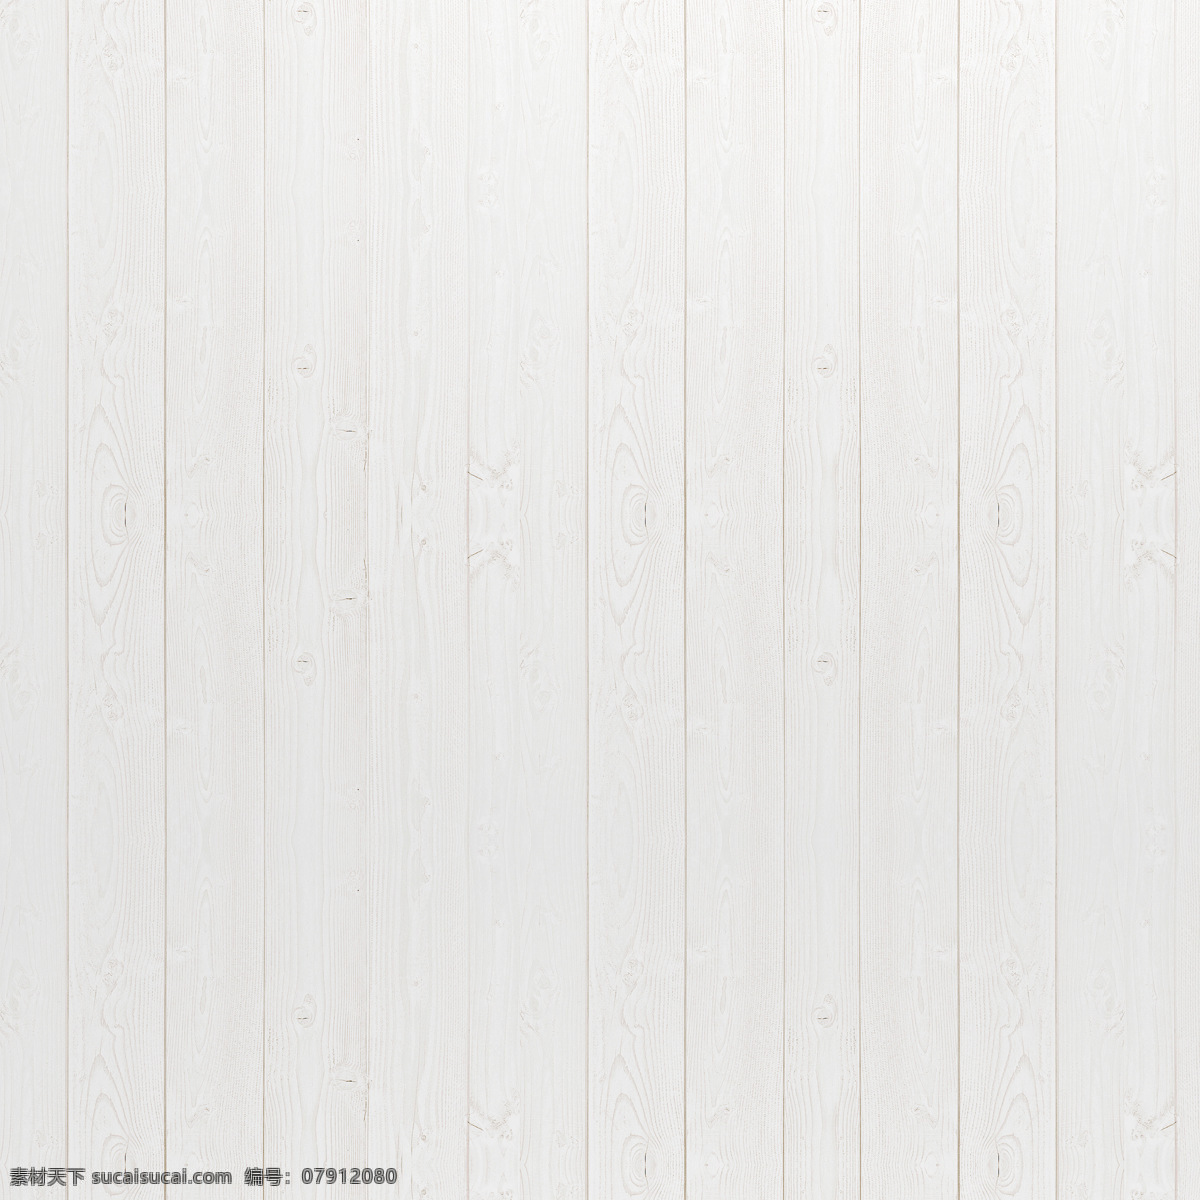 白色木纹地板 木纹地板 纹理地板 原木纹 木纹肌理 高清木纹 背景底纹 生活百科 生活用品